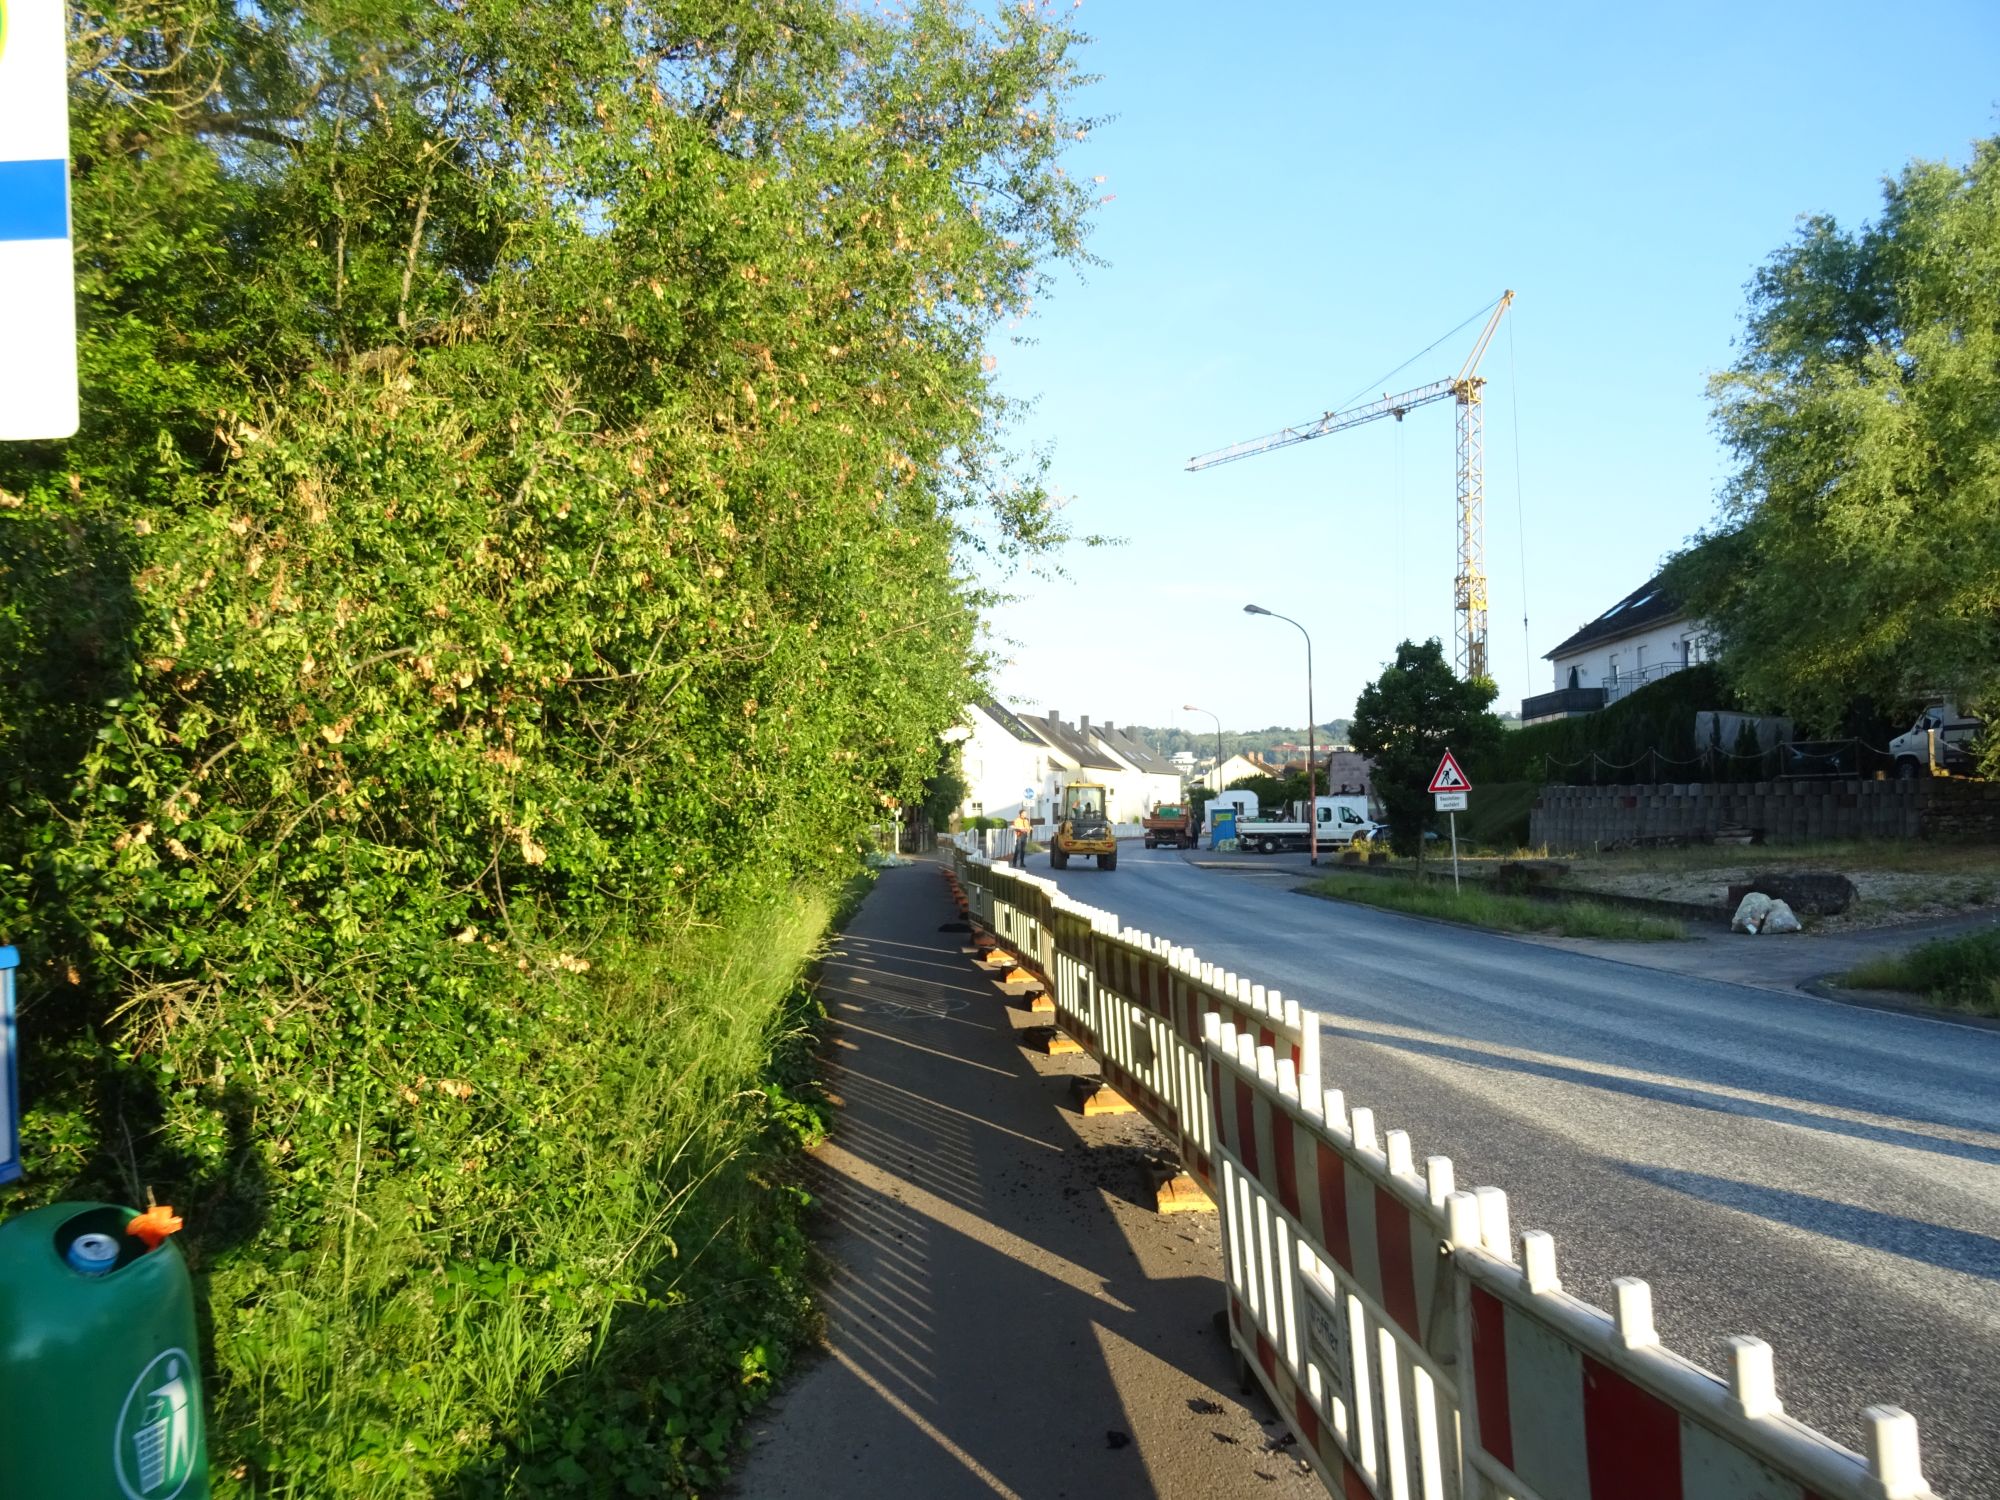 Links Bäume, Mitte Radweg mit Bauzaun, rechts die noch nicht freigegebene Fahrbahn, im Hintergrund ein Baufahrzeug